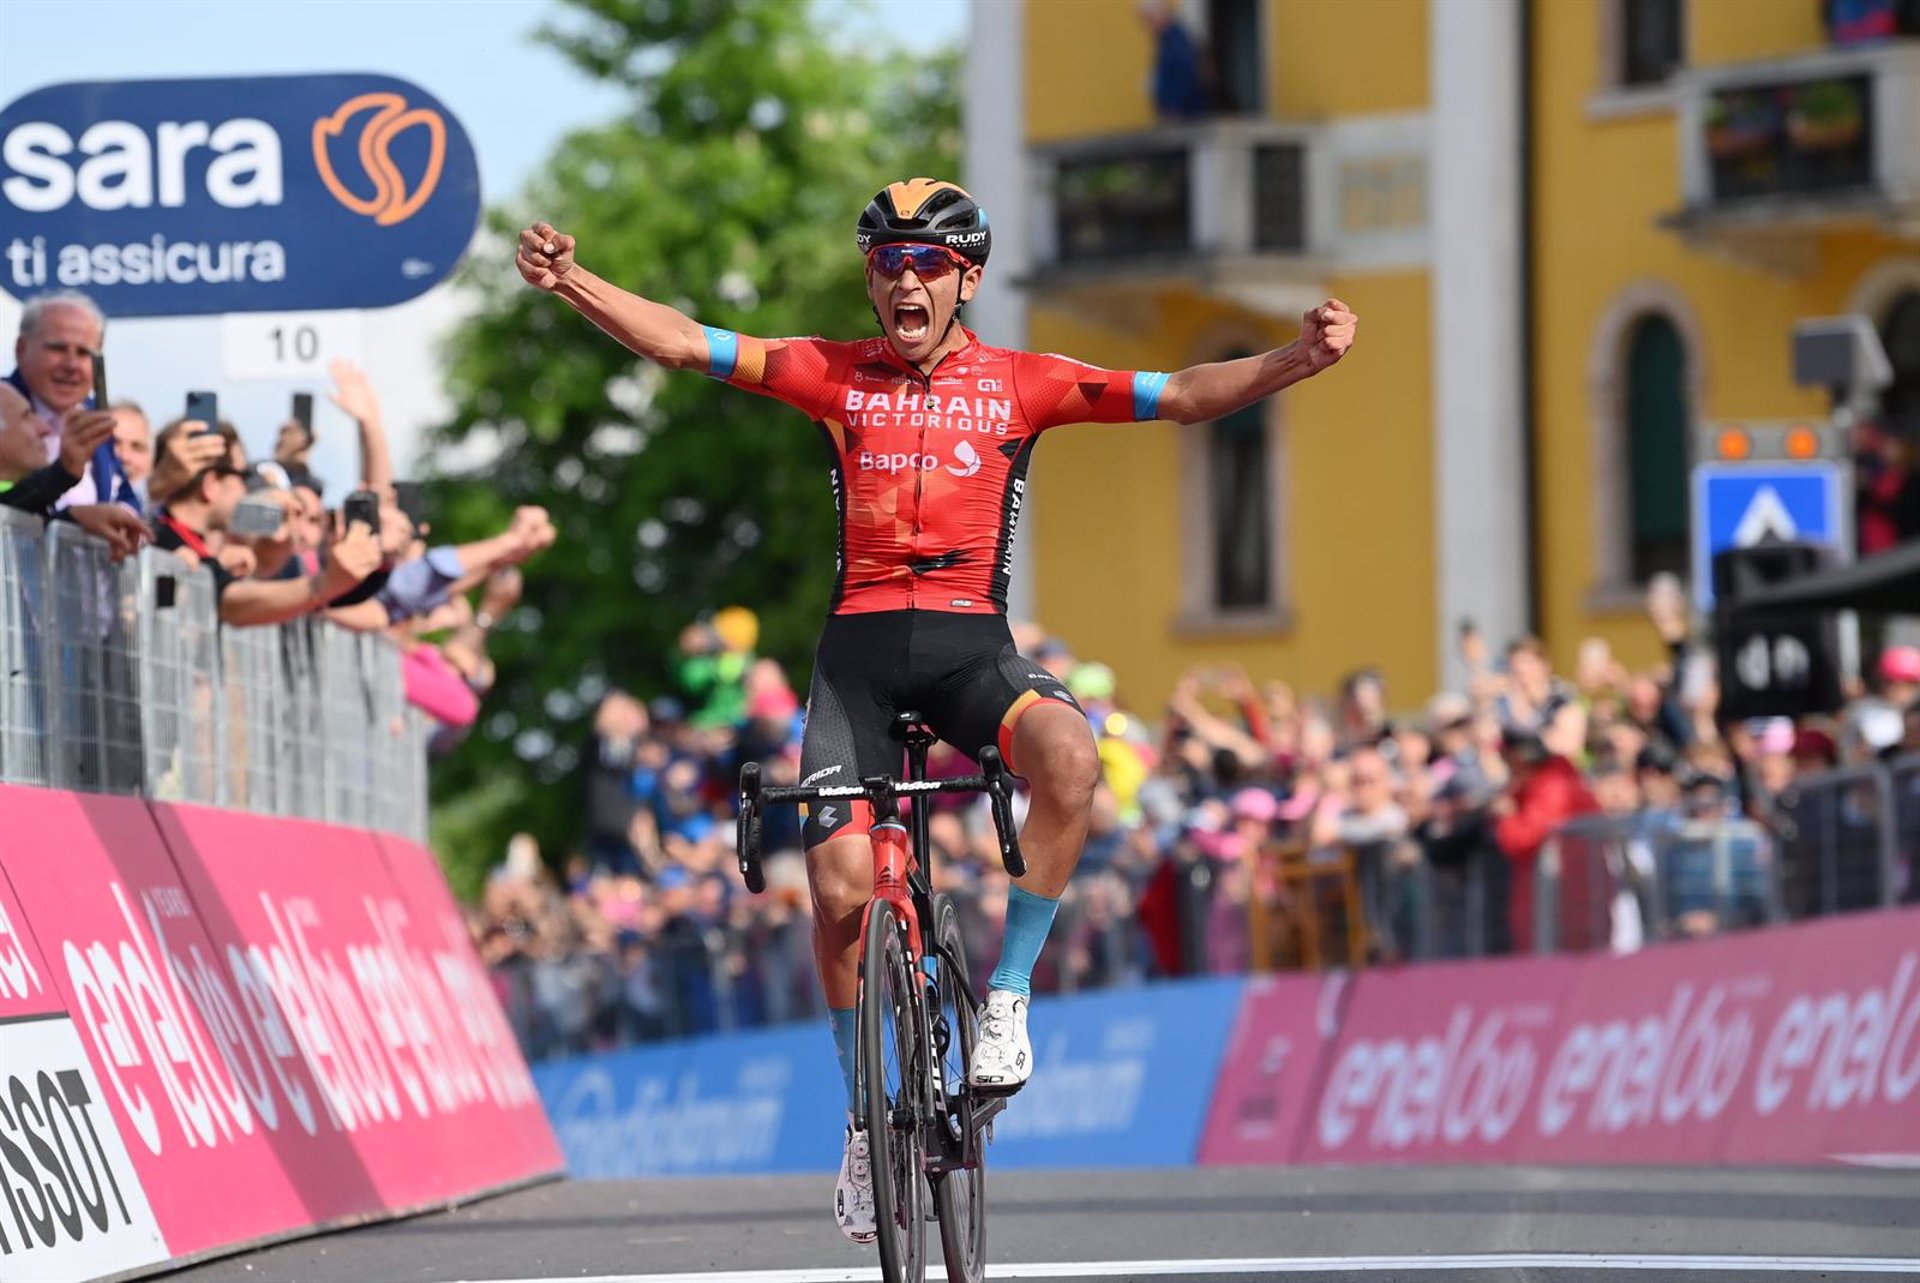 El colombiano Buitrago gana la etapa y Landa se sube al podio provisional del Giro